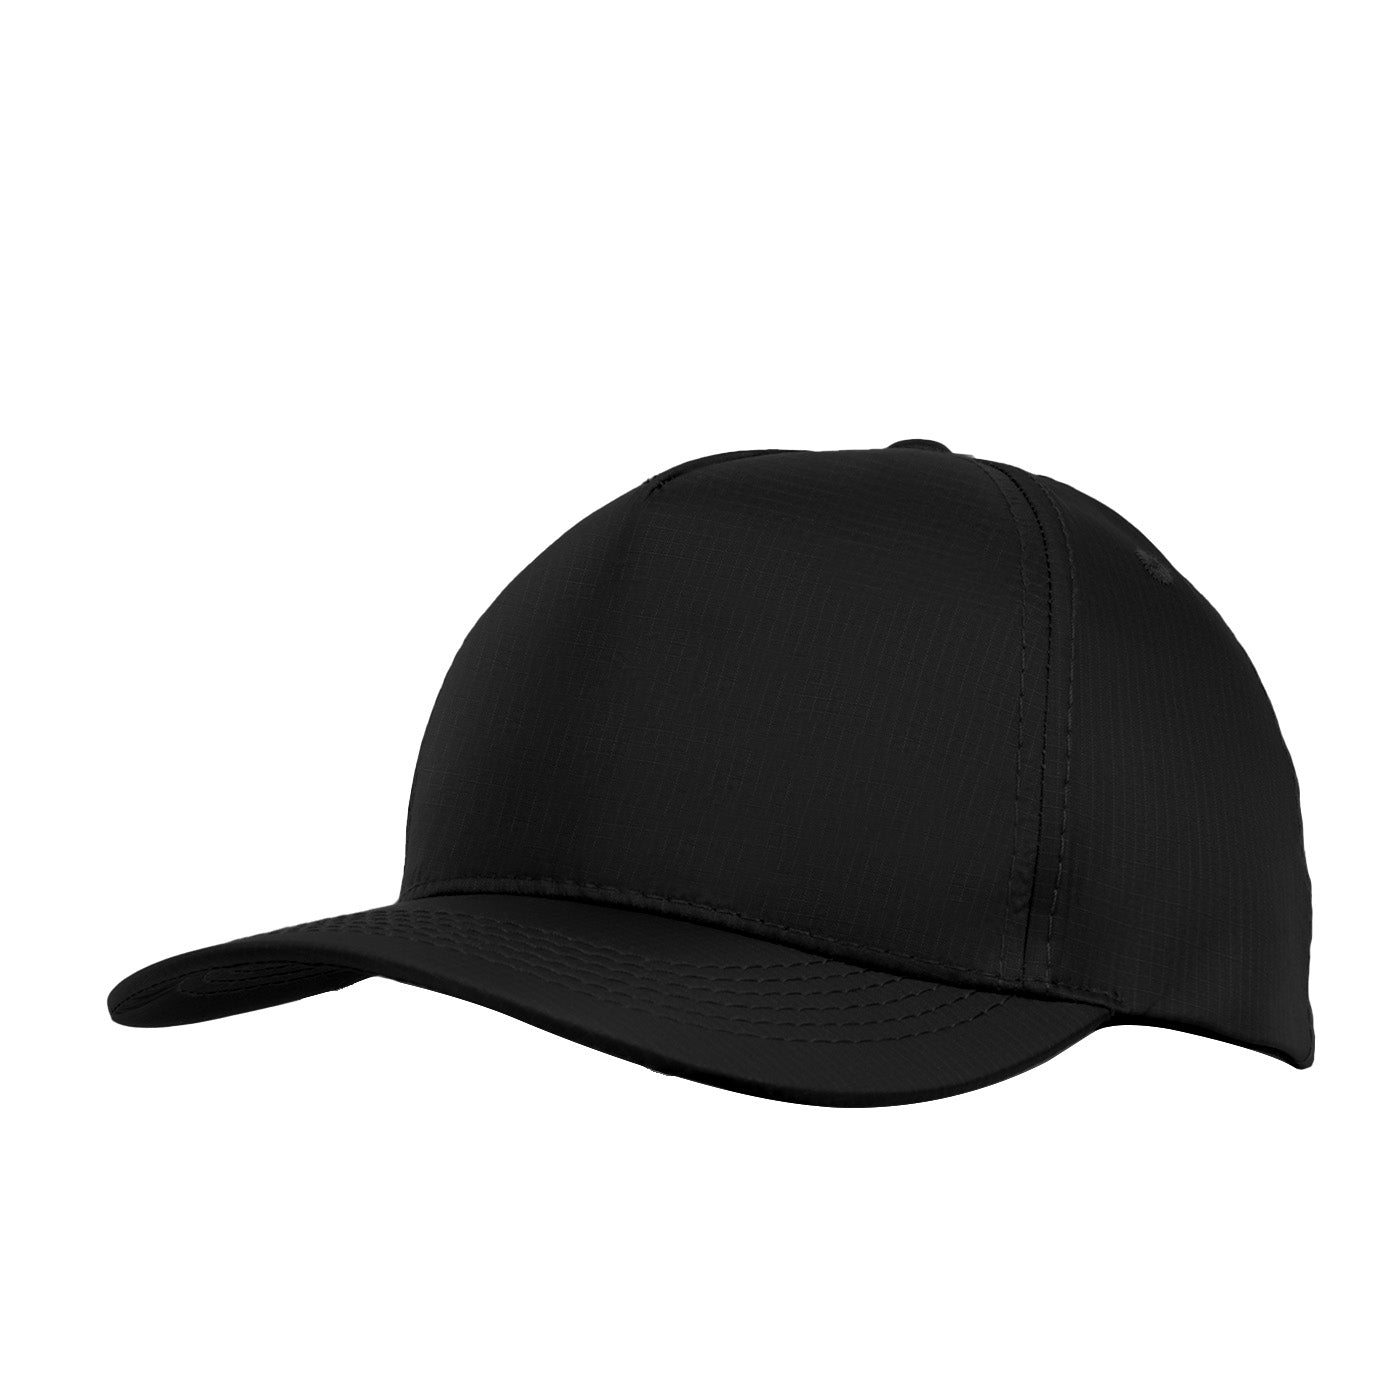 Gorra clásica Negra - Citybags